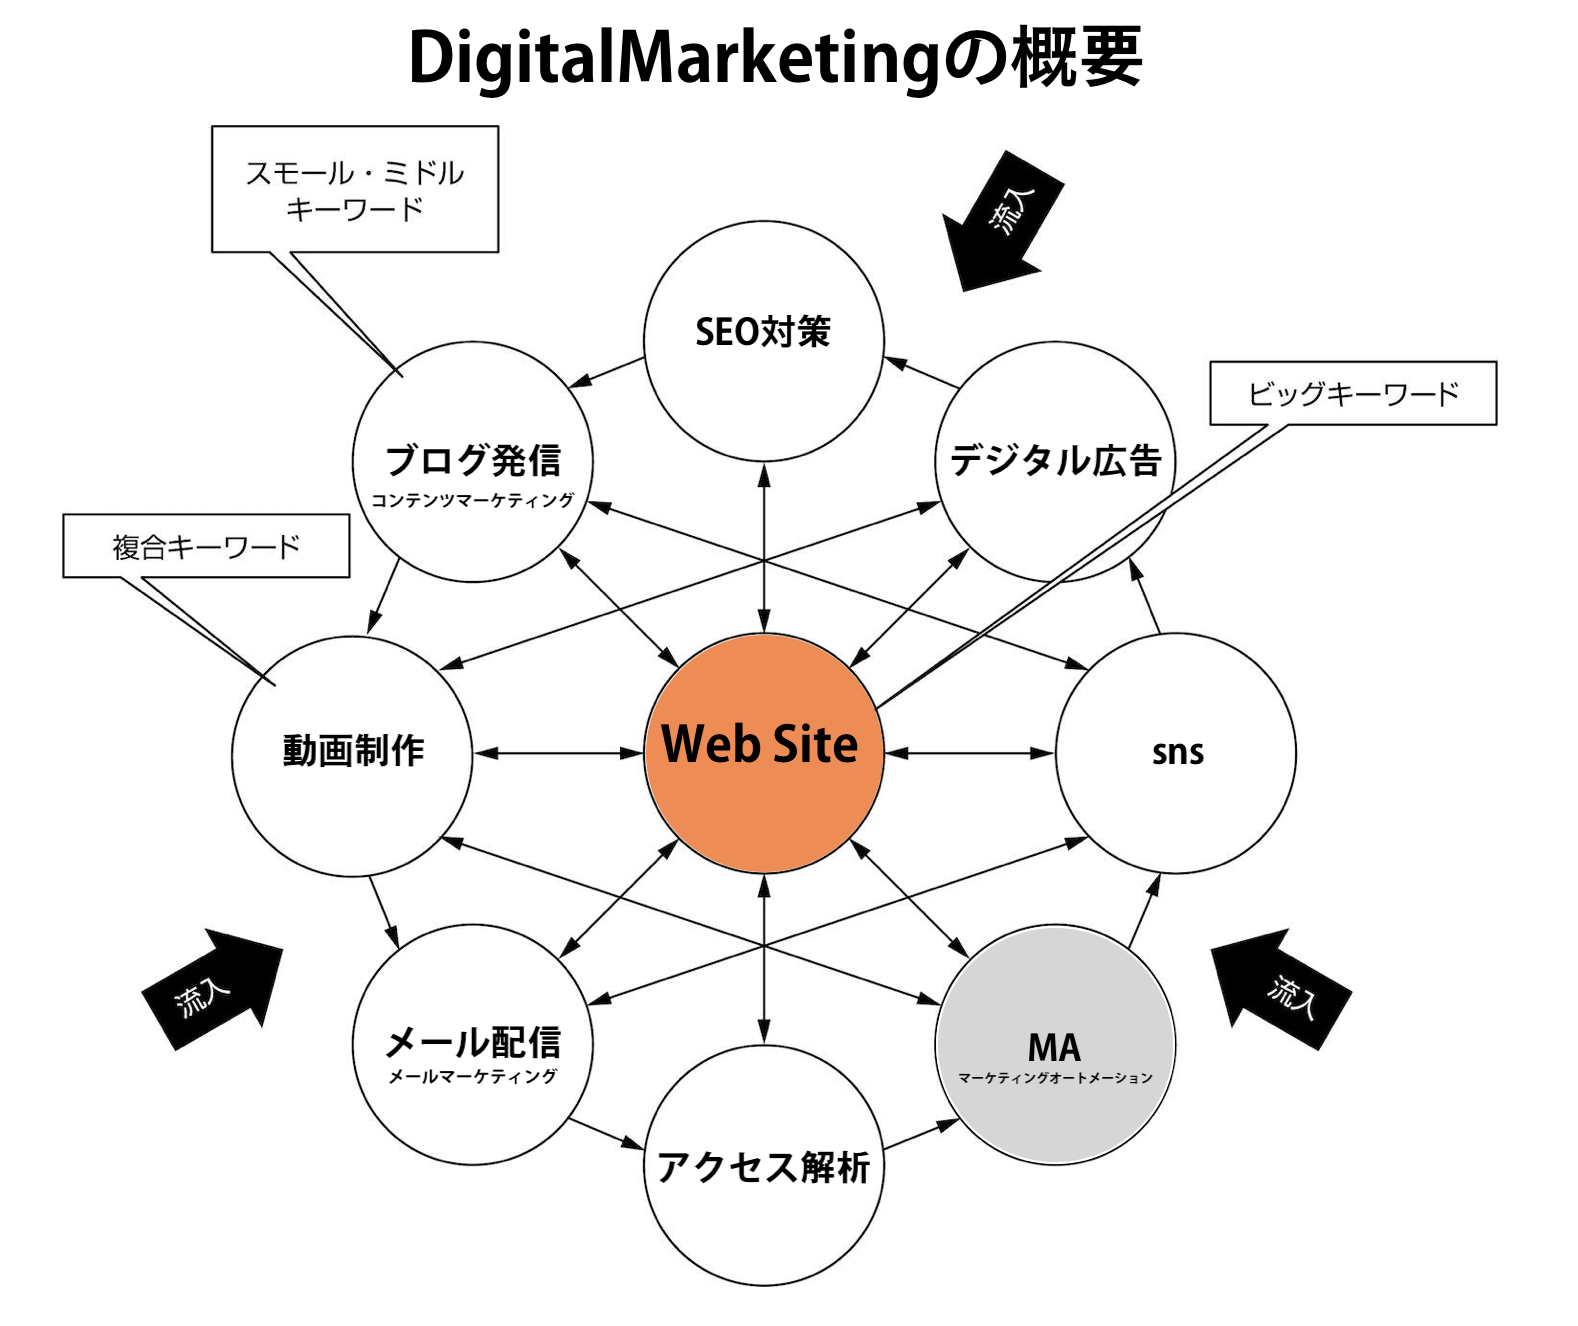  デジタルマーケティングの概要図